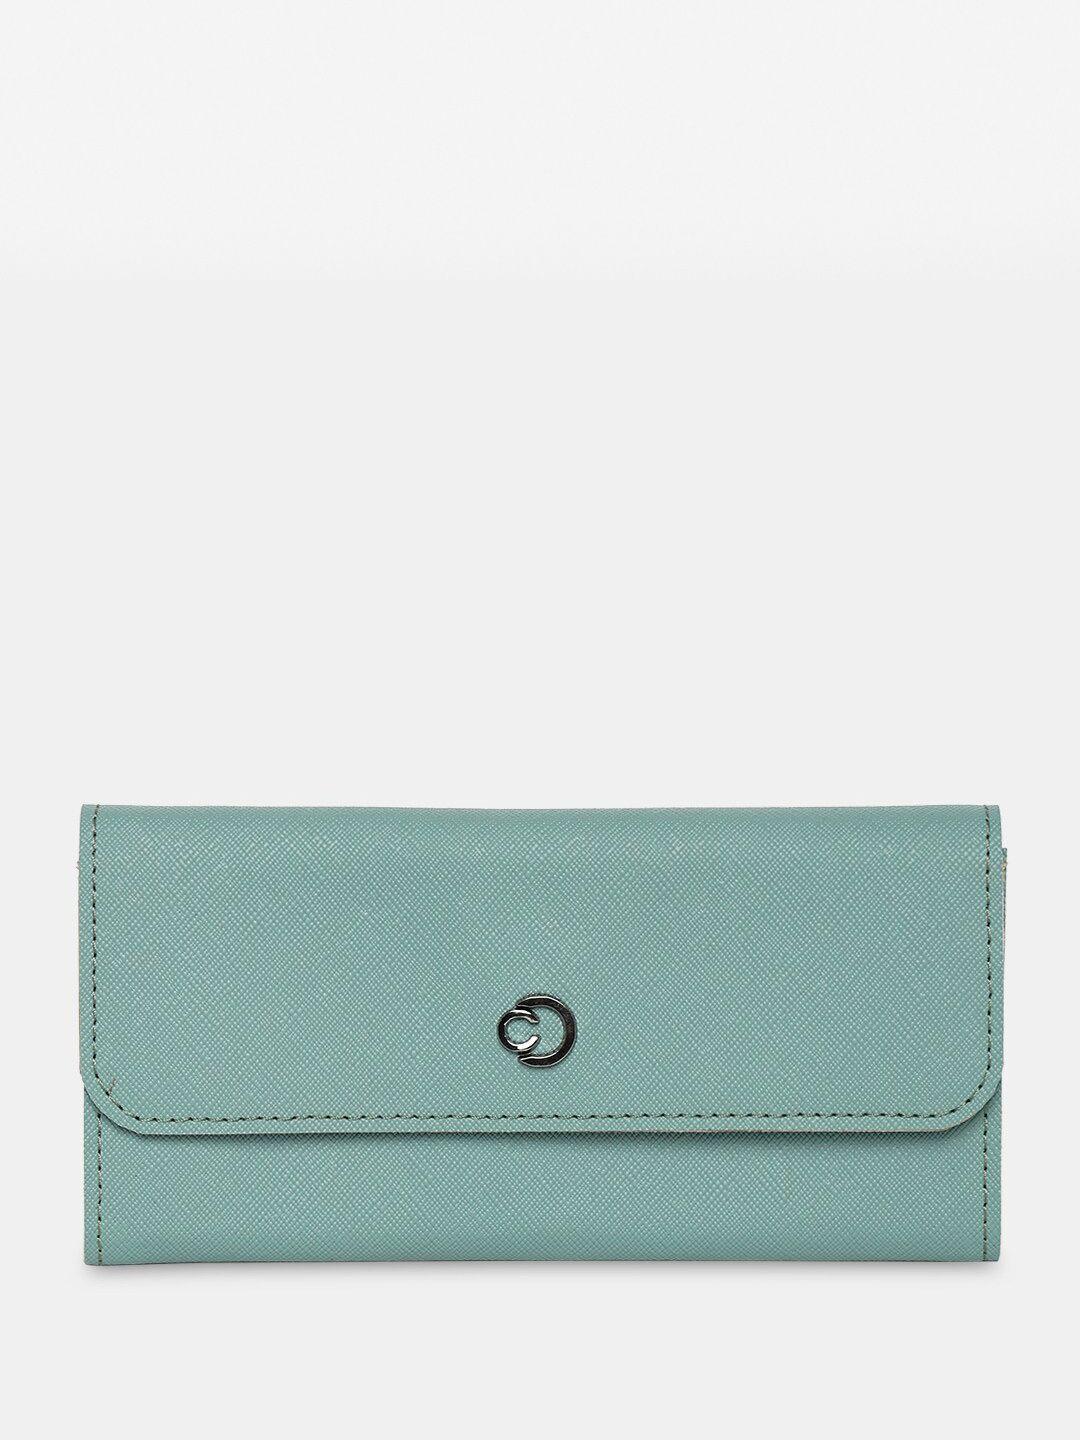 caprese women leather two fold wallet